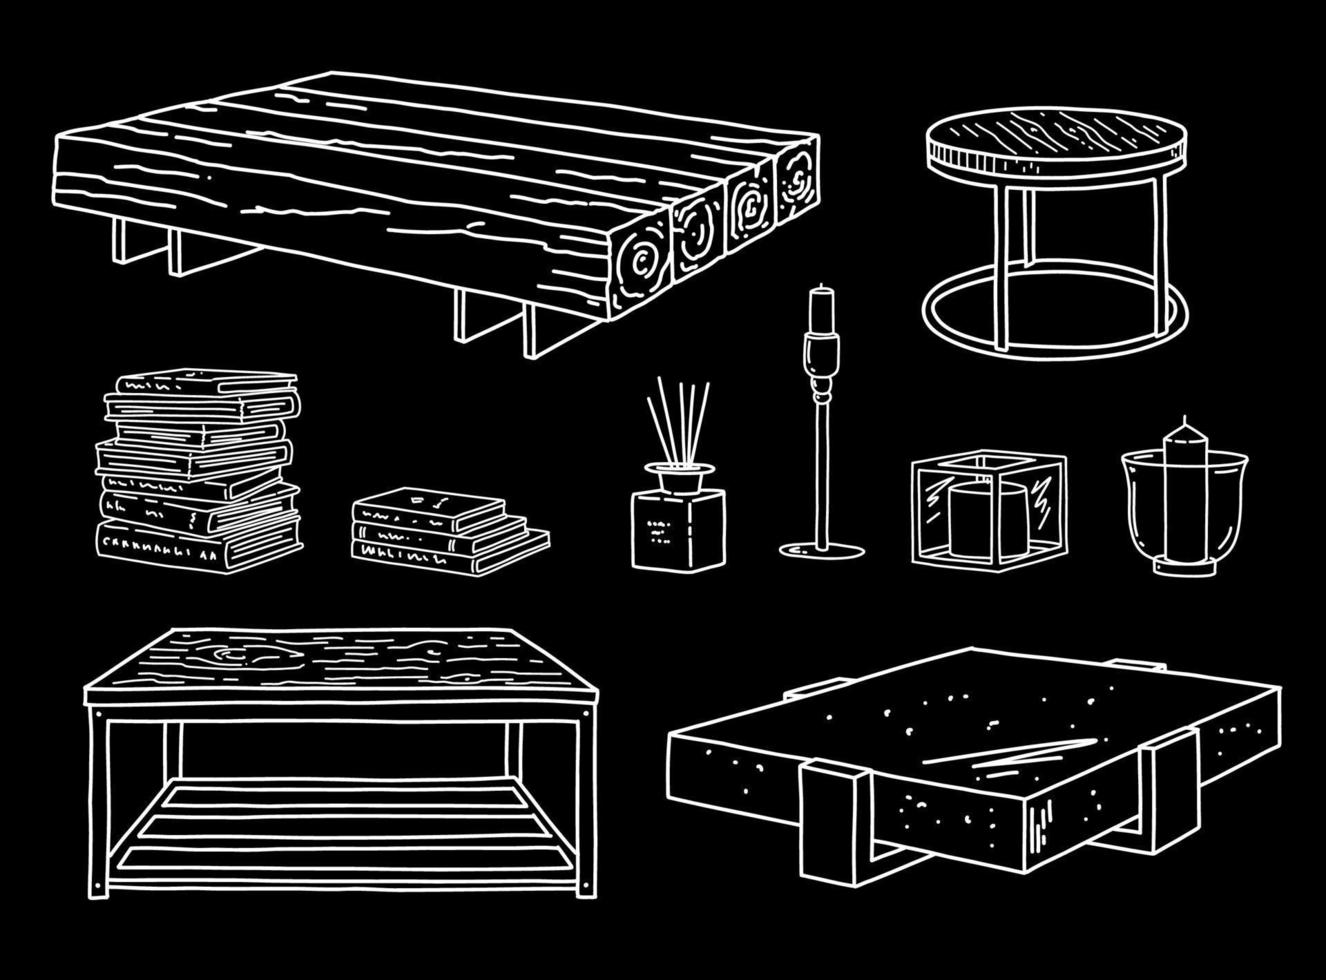 vetor de móveis definido com mesa, livro e vela. detalhes e decoração de interiores industriais. ilustração de esboço de linha.